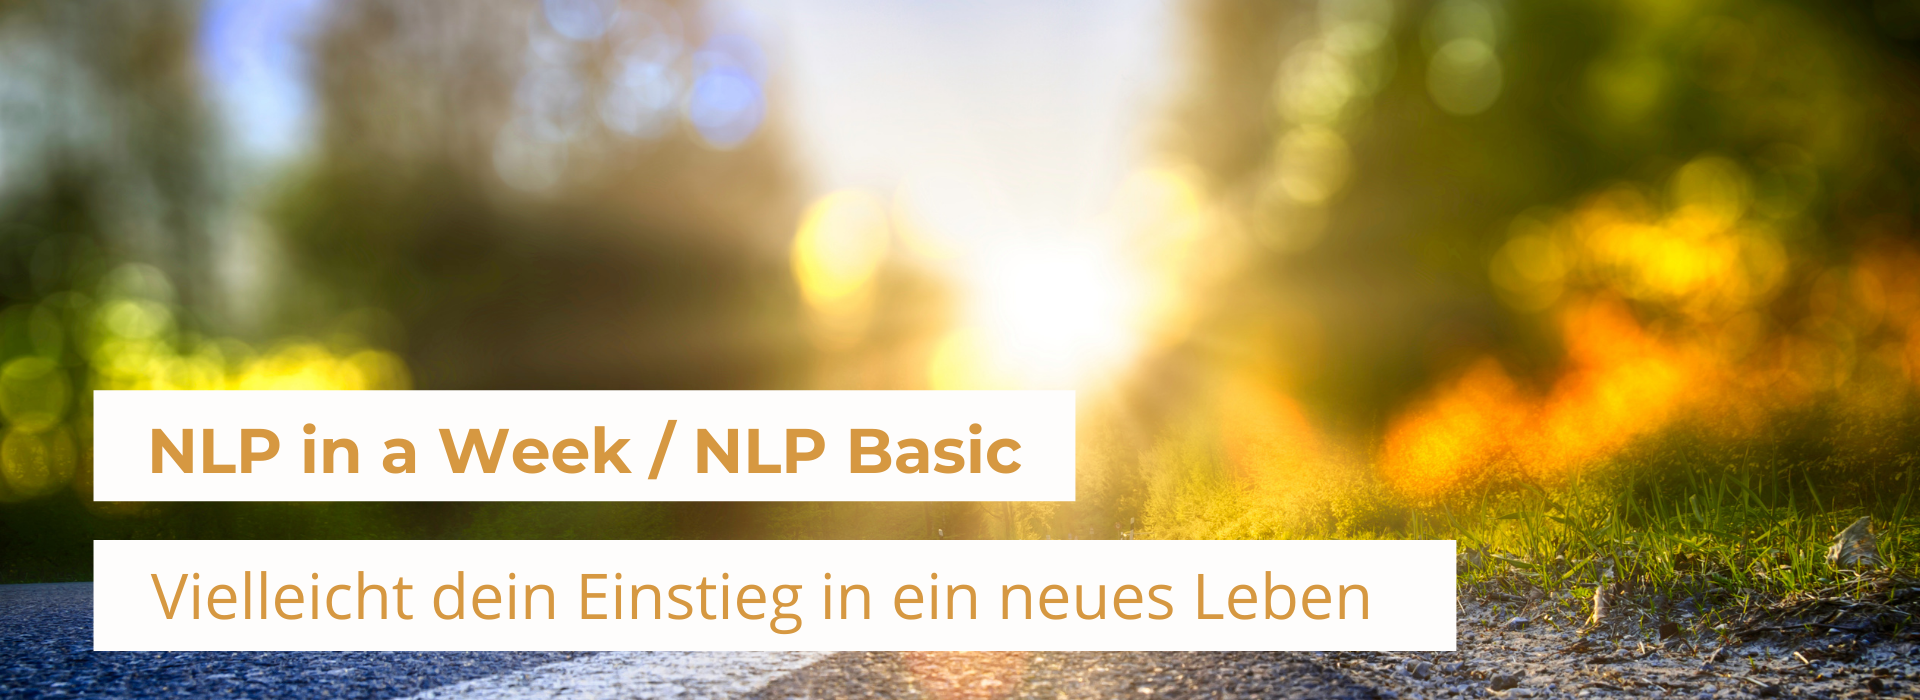 NLP Basic für Erfolg im Beruf und erfüllte Partnerschaften 17. - 23. Okt.22